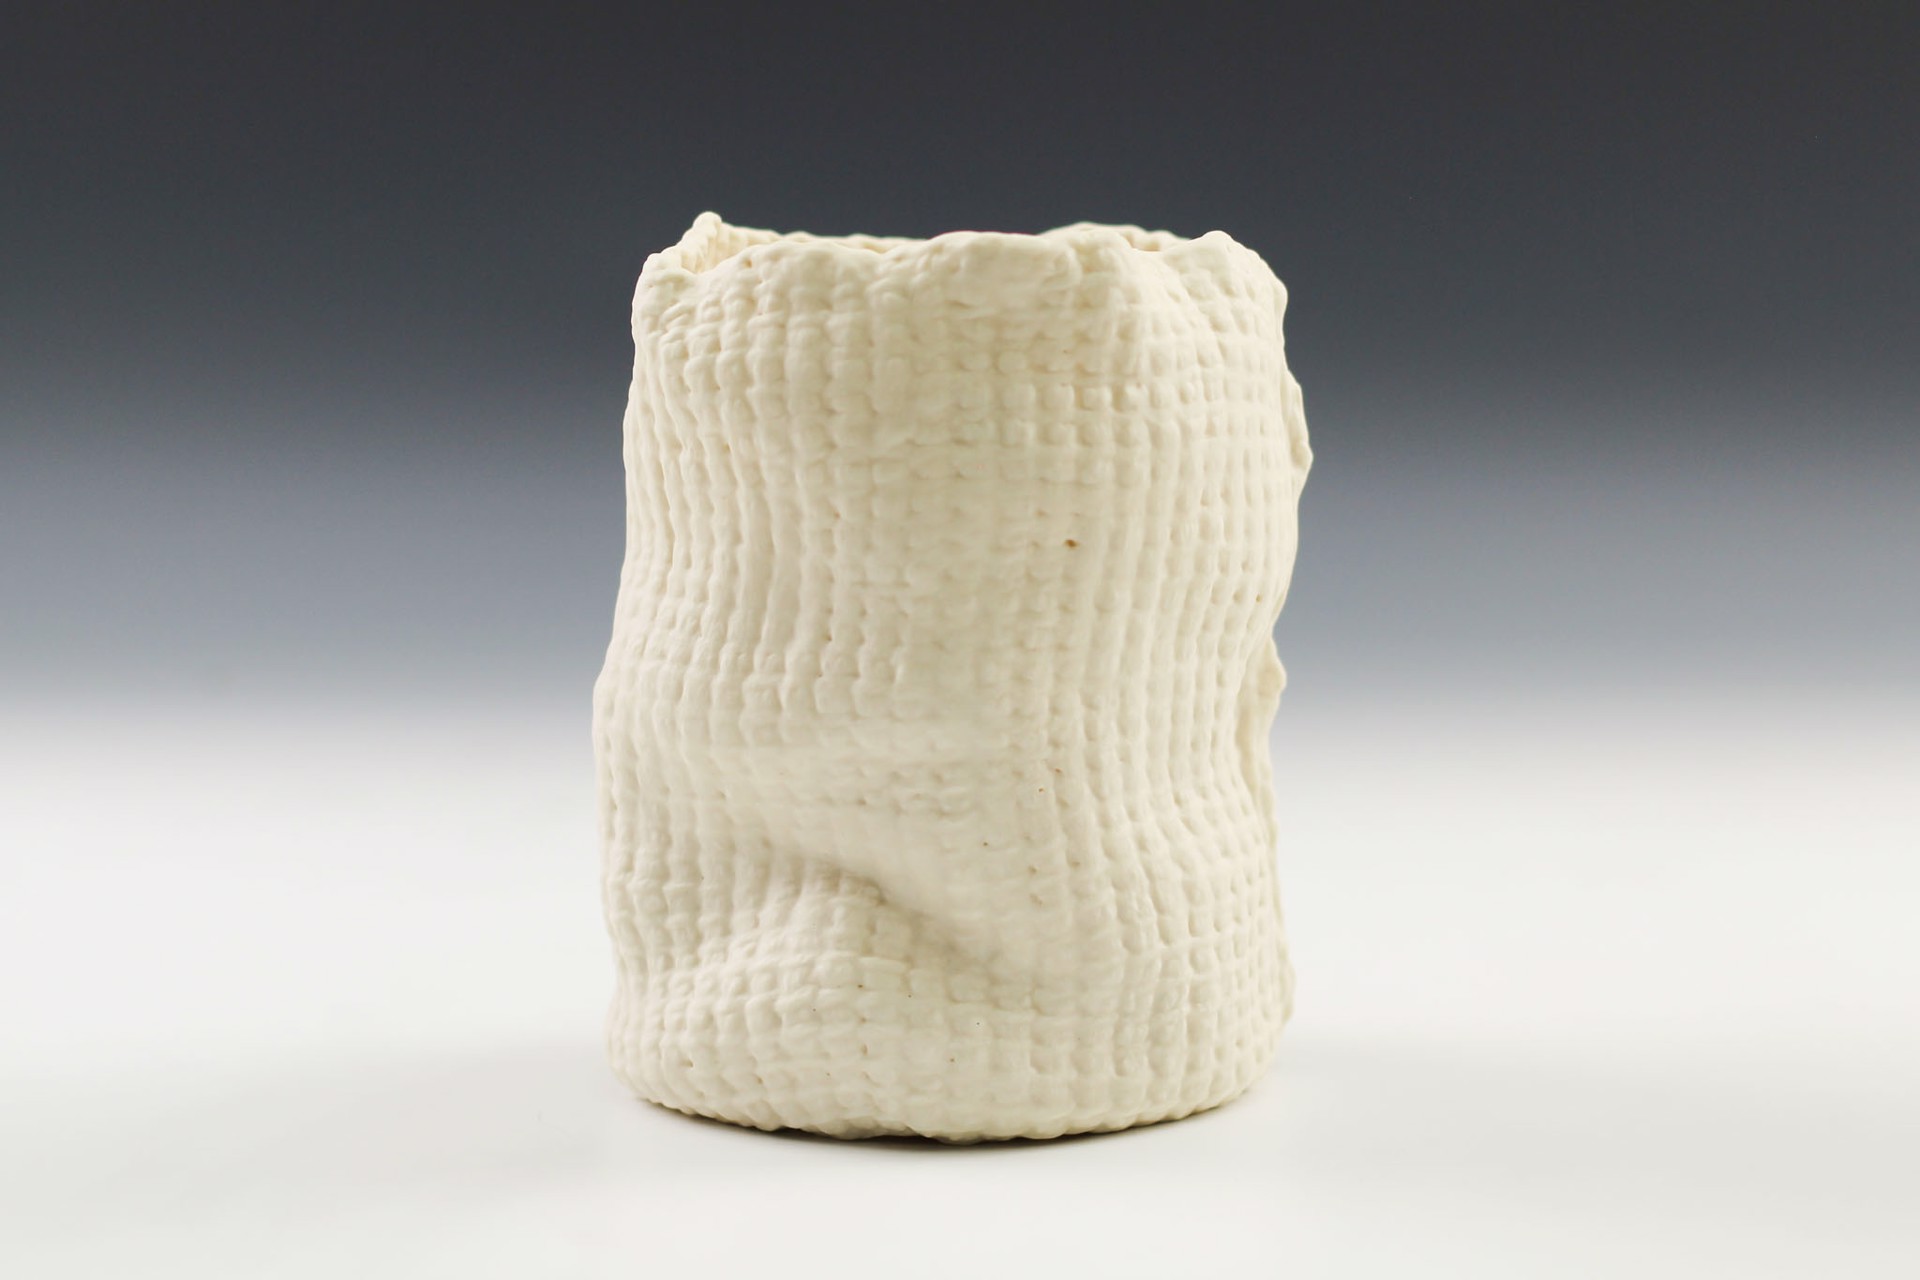 Tall Tunisian Crochet Vessel by Lisa Belsky